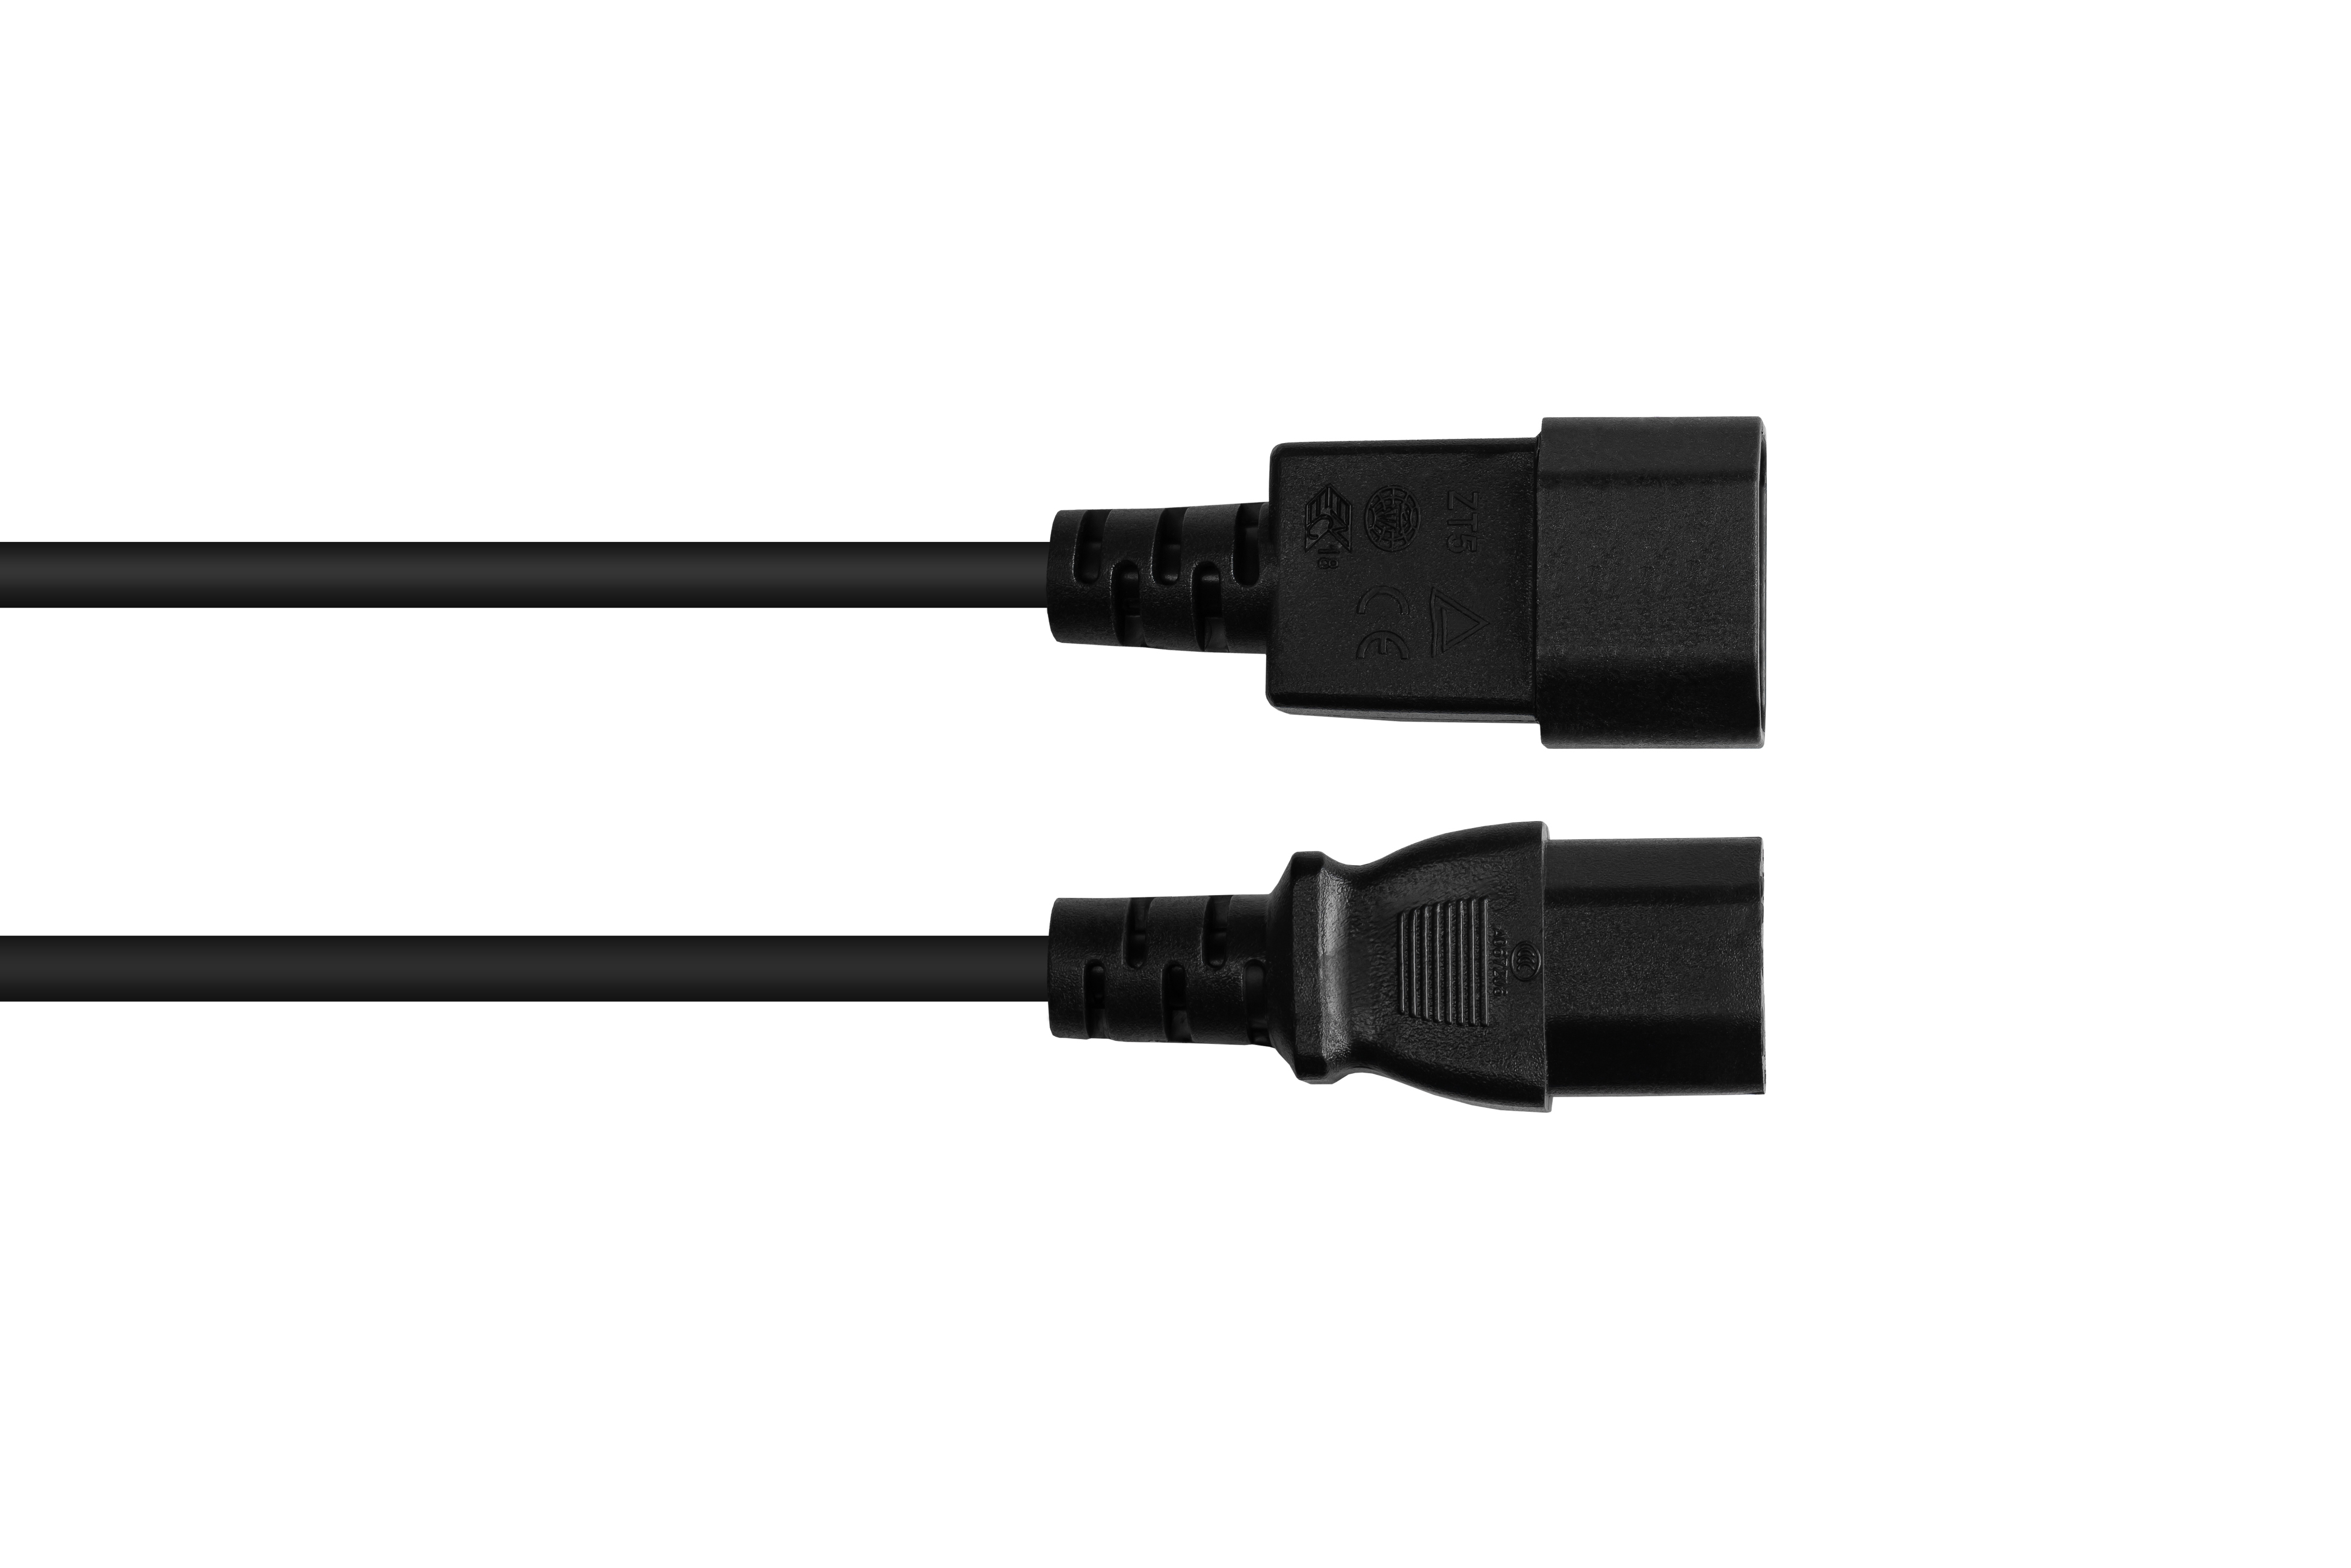 schwarz GOOD (gerade) an 0,75 C15 CONNECTIONS (gerade), mm² schwarz, Kaltgeräte-Warmgeräte-Verbindungskabel C14 Stromkabel,